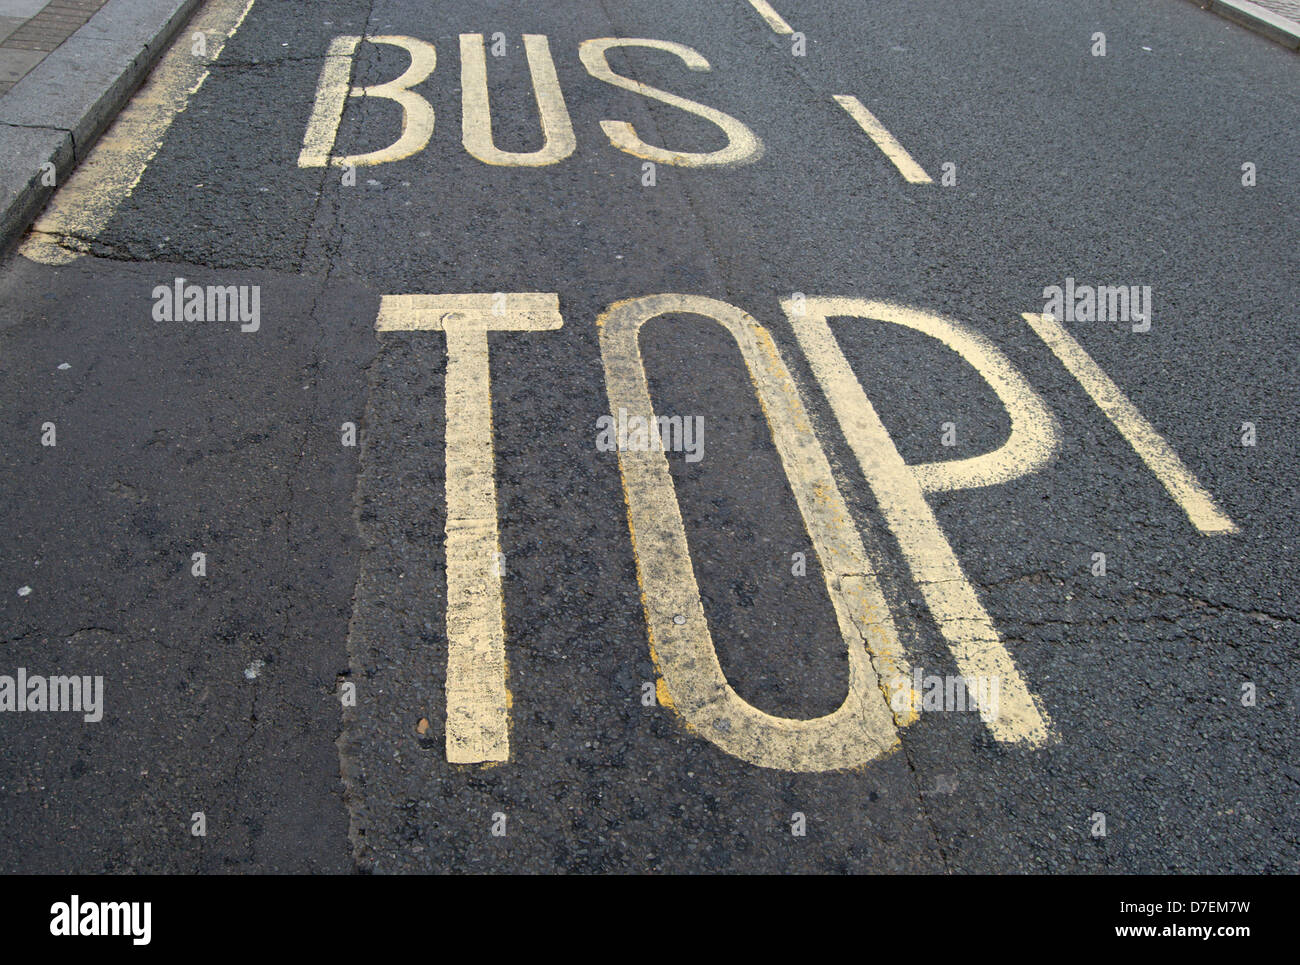 La signalisation indiquant un arrêt d'autobus mais avec la lettre s obscurci en raison d'un nouveau revêtement de la route Banque D'Images